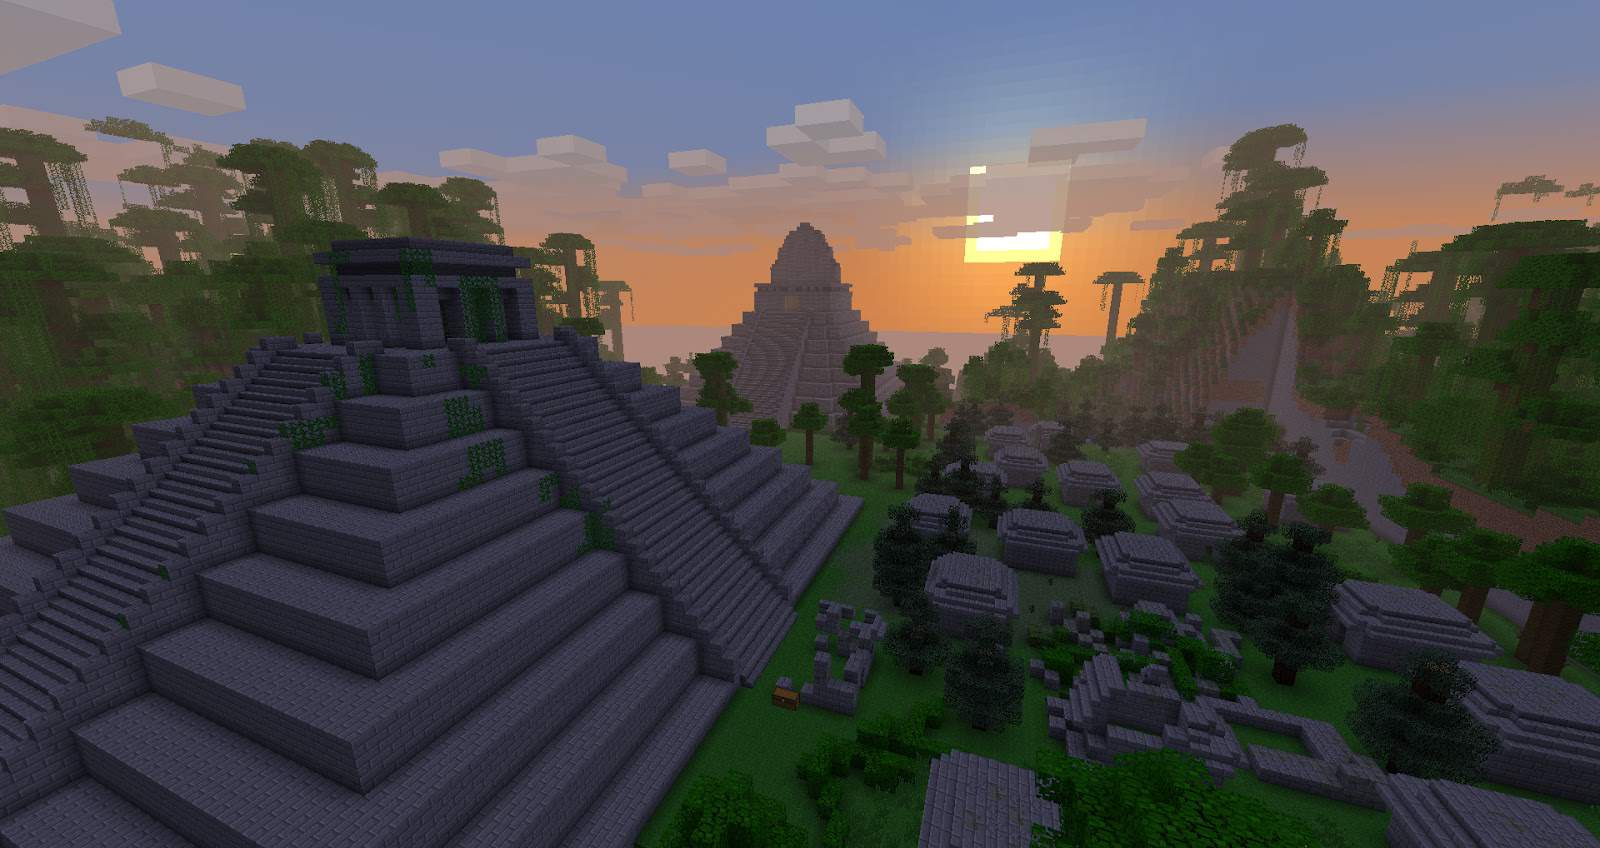 mayans_minecraft_ruins_sunset